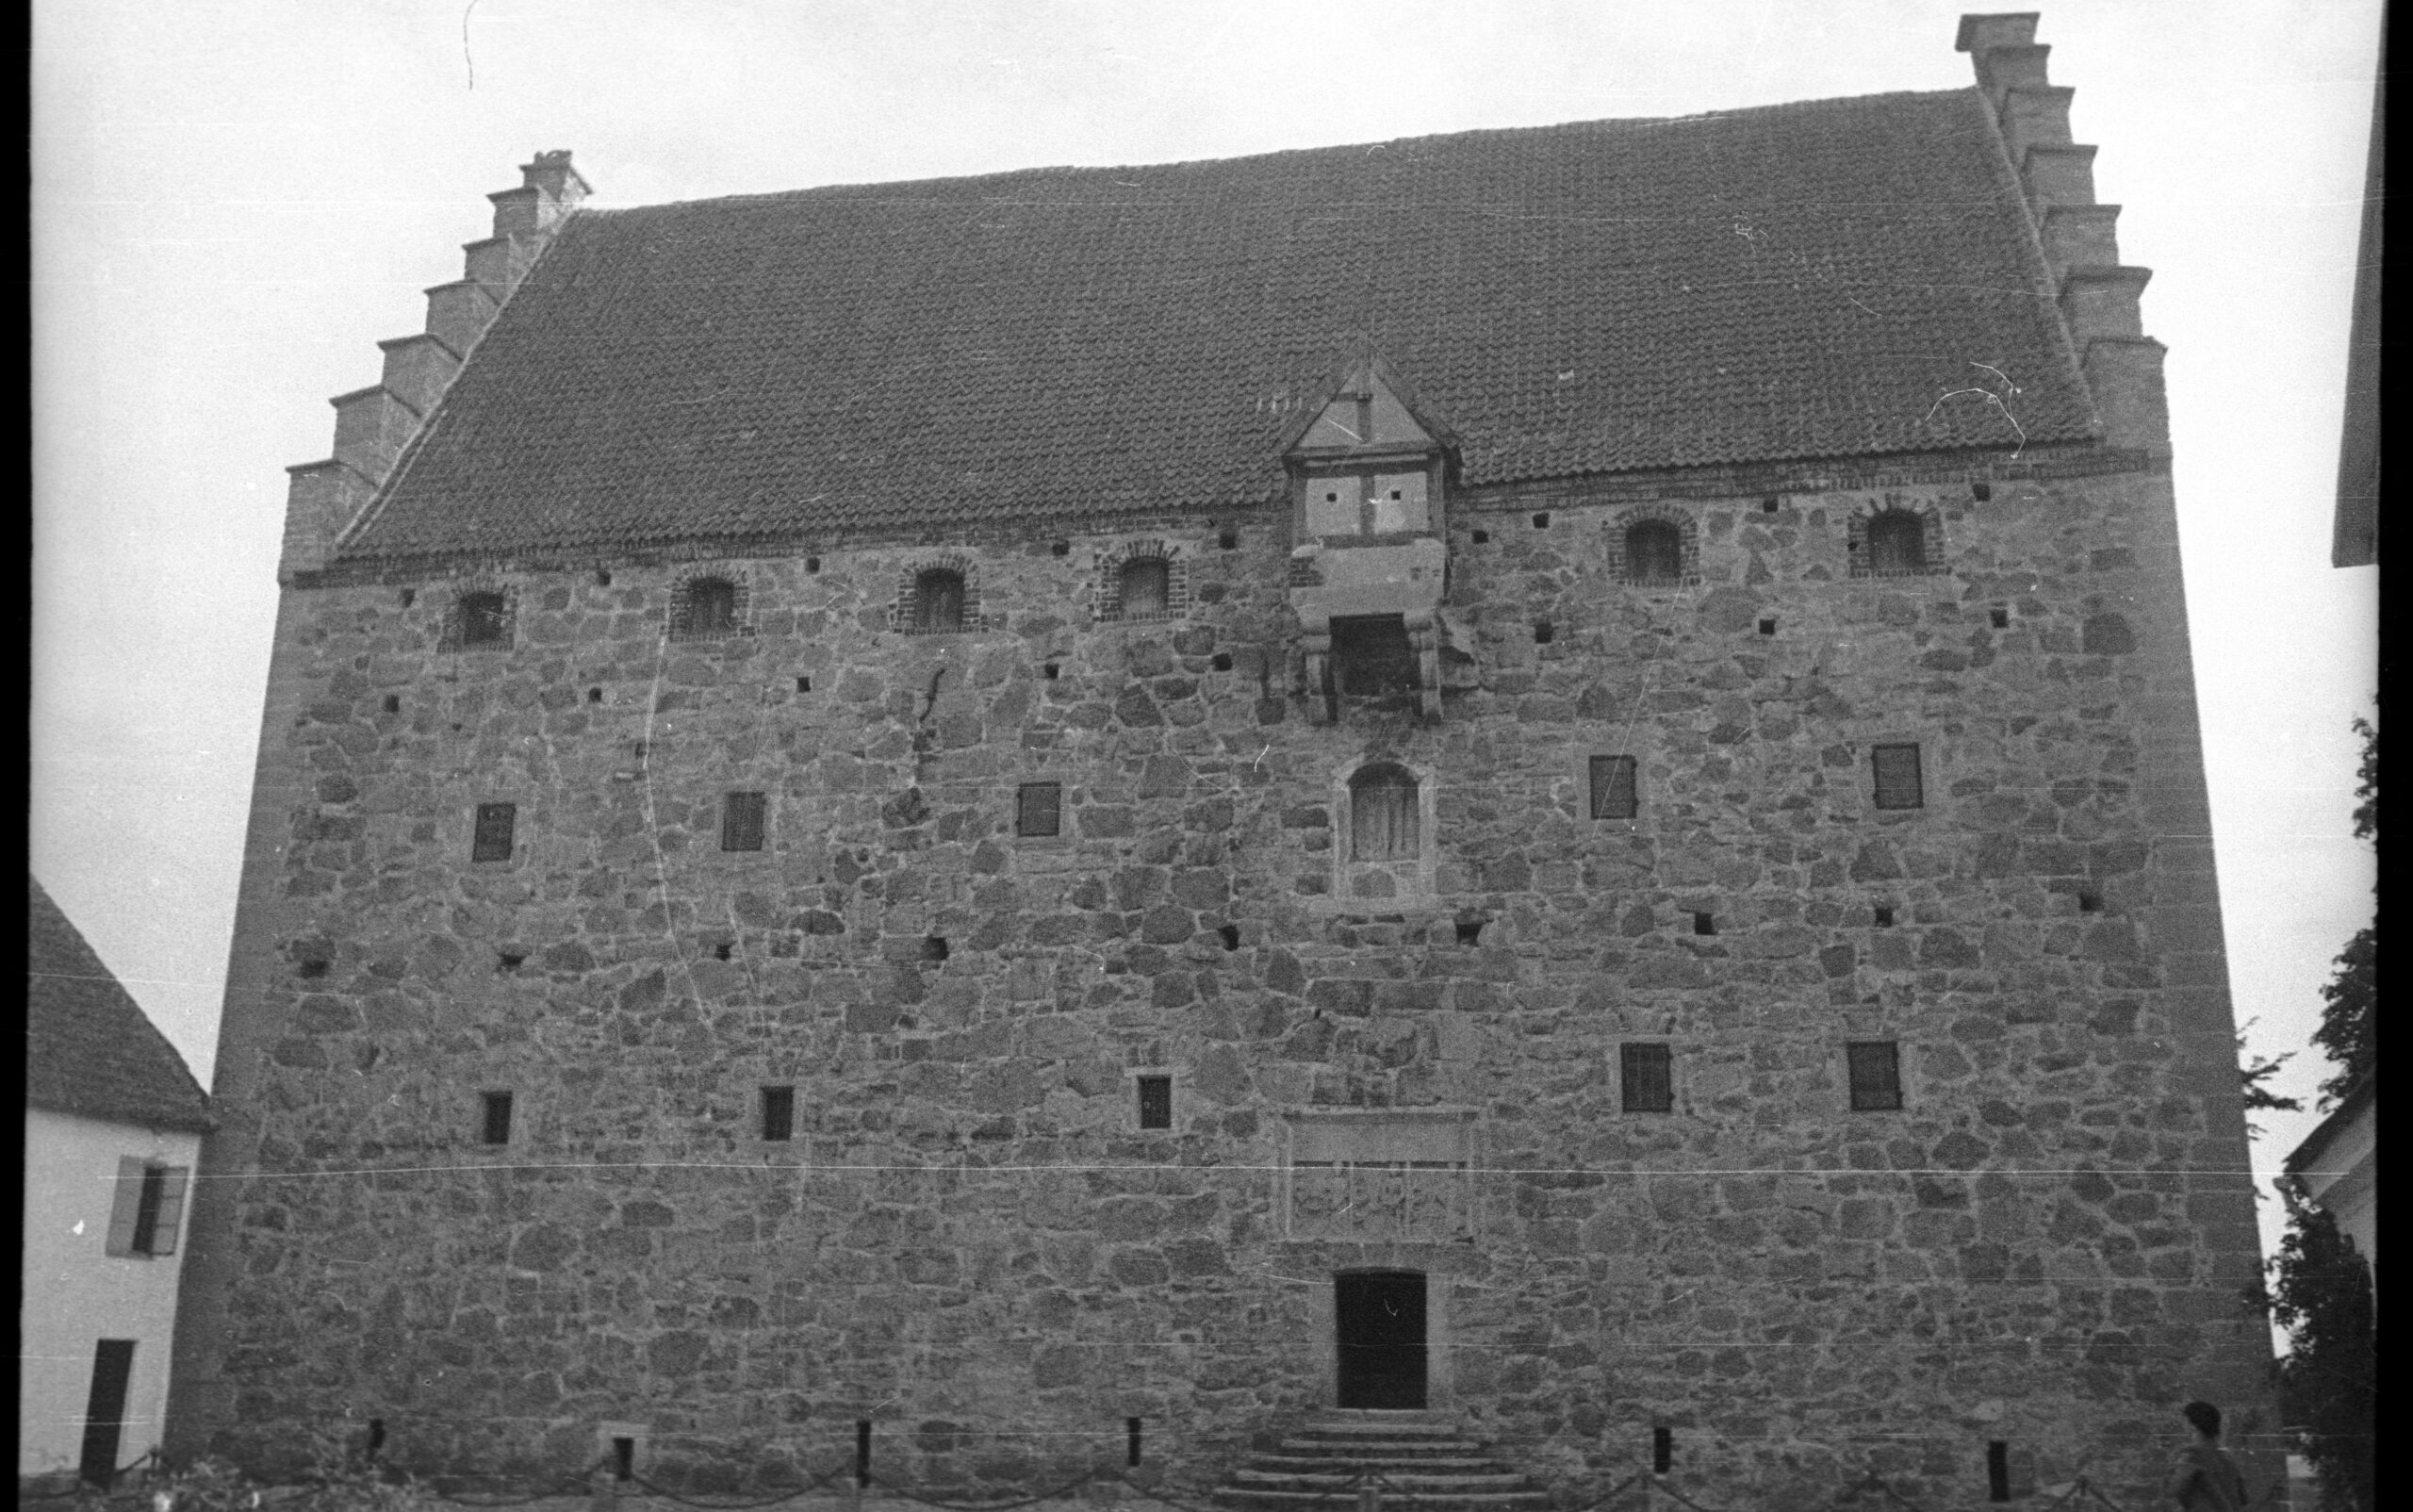 Borgen ses i svartvit från borggården.